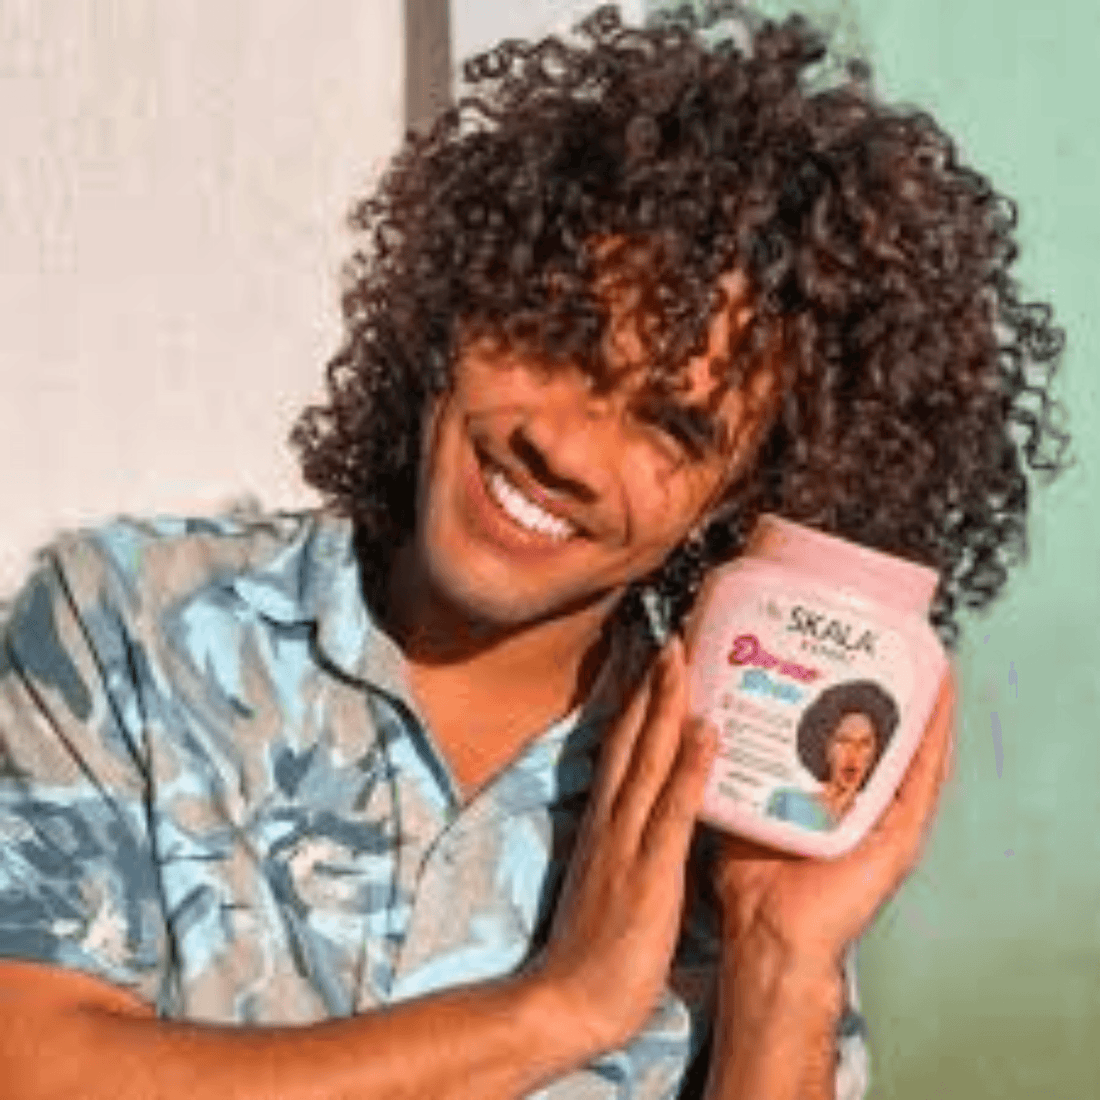 Skala Expert Divino Pot Cream for Hair Transition Crespo &amp; Cacheados 1000g | 35.2 oz - BUY BRAZIL STORE